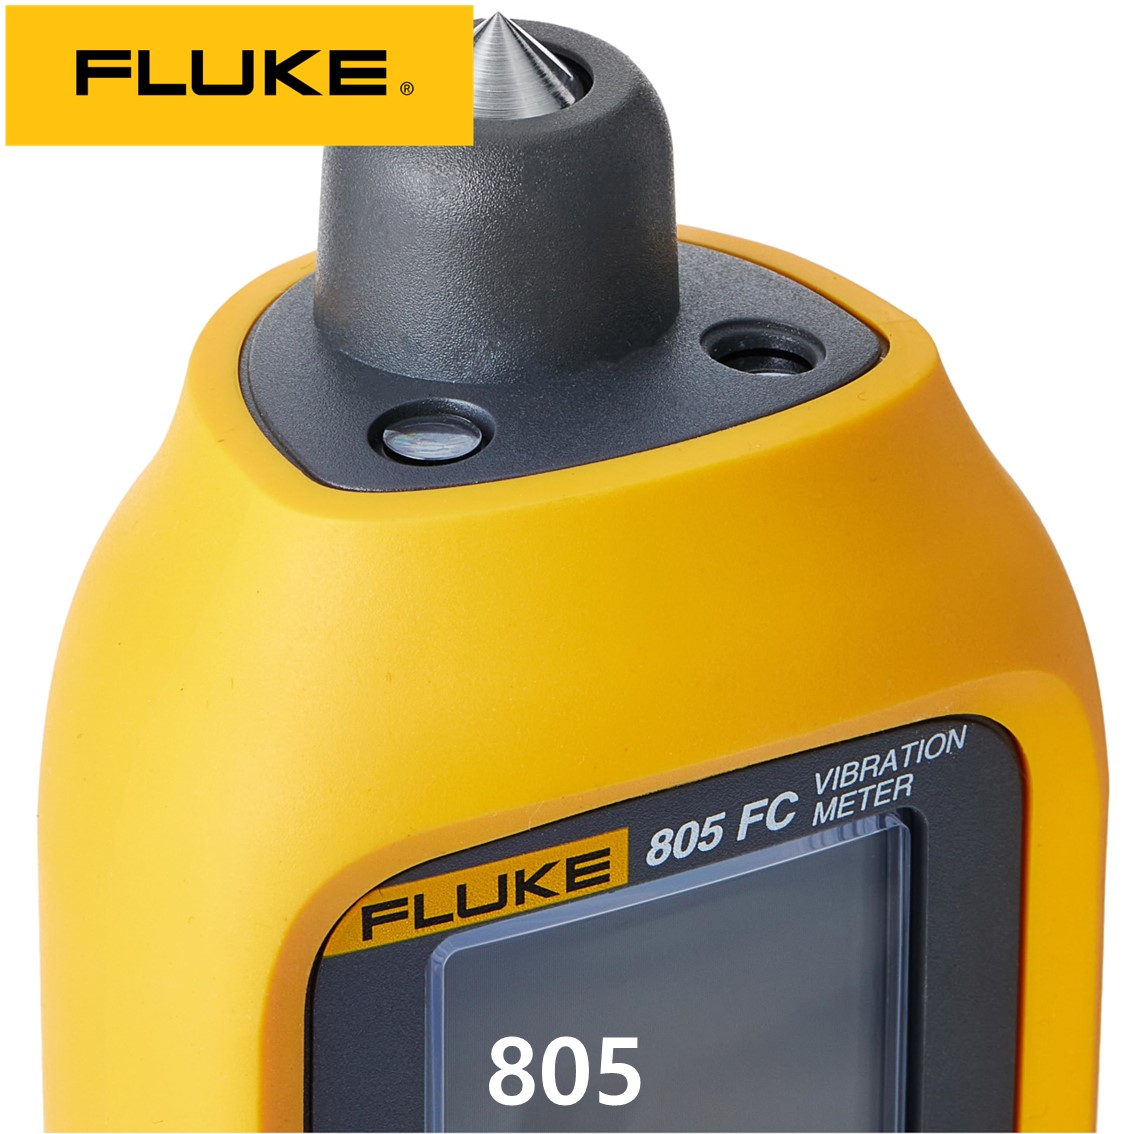 [FLUKE 805] ﻿모터제품 수명연장 산업용 진동측정기진동분석계, 플루크805